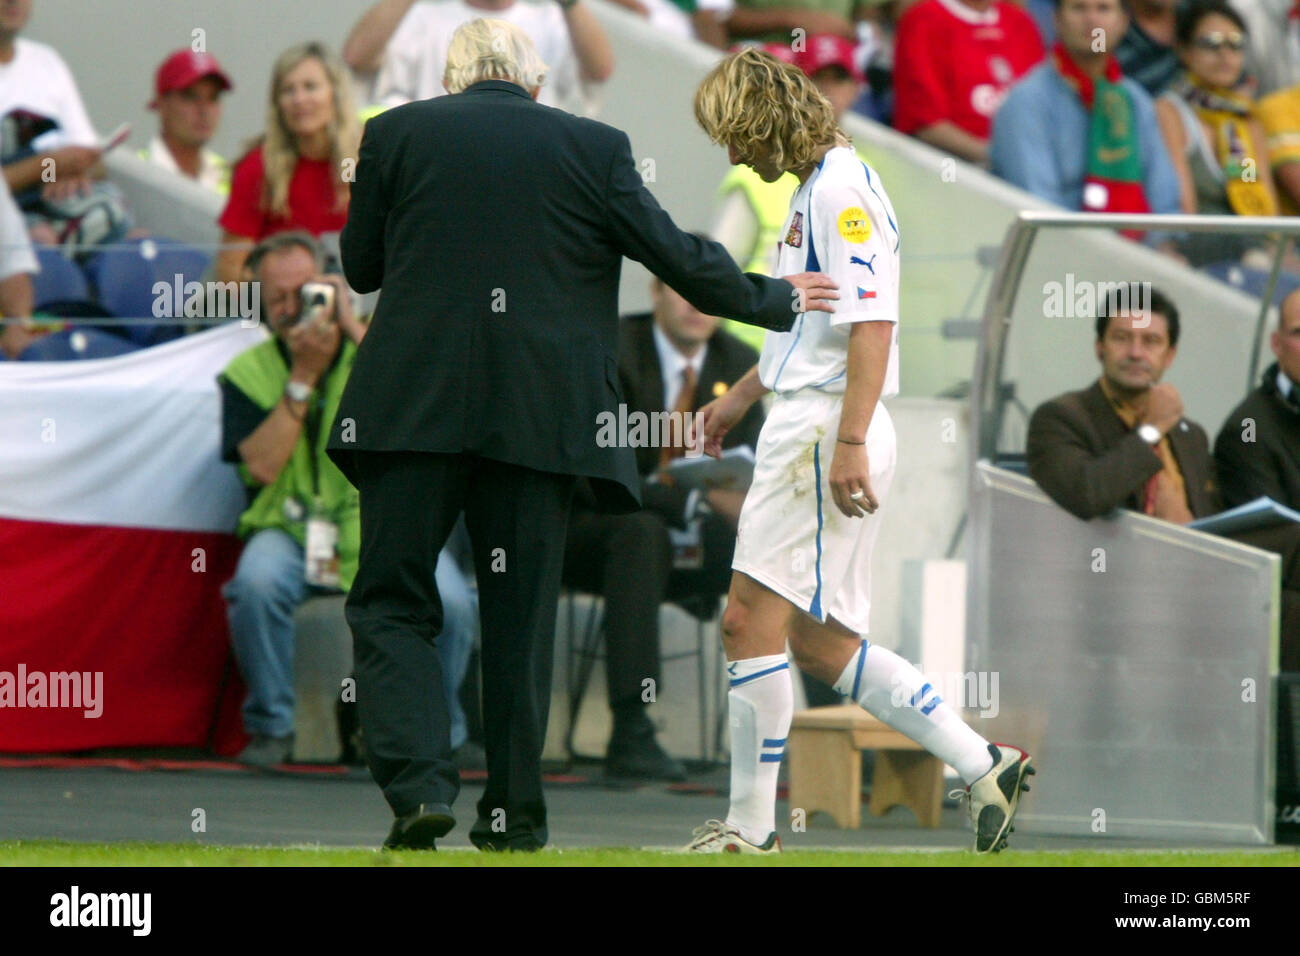 Football - Championnat d'Europe de l'UEFA 2004 - semi finale - Grèce / République Tchèque.Karel Bruckner (l), entraîneur en chef de la République tchèque, console Pavel Nedved après qu'une blessure ait forcé son remplacement Banque D'Images